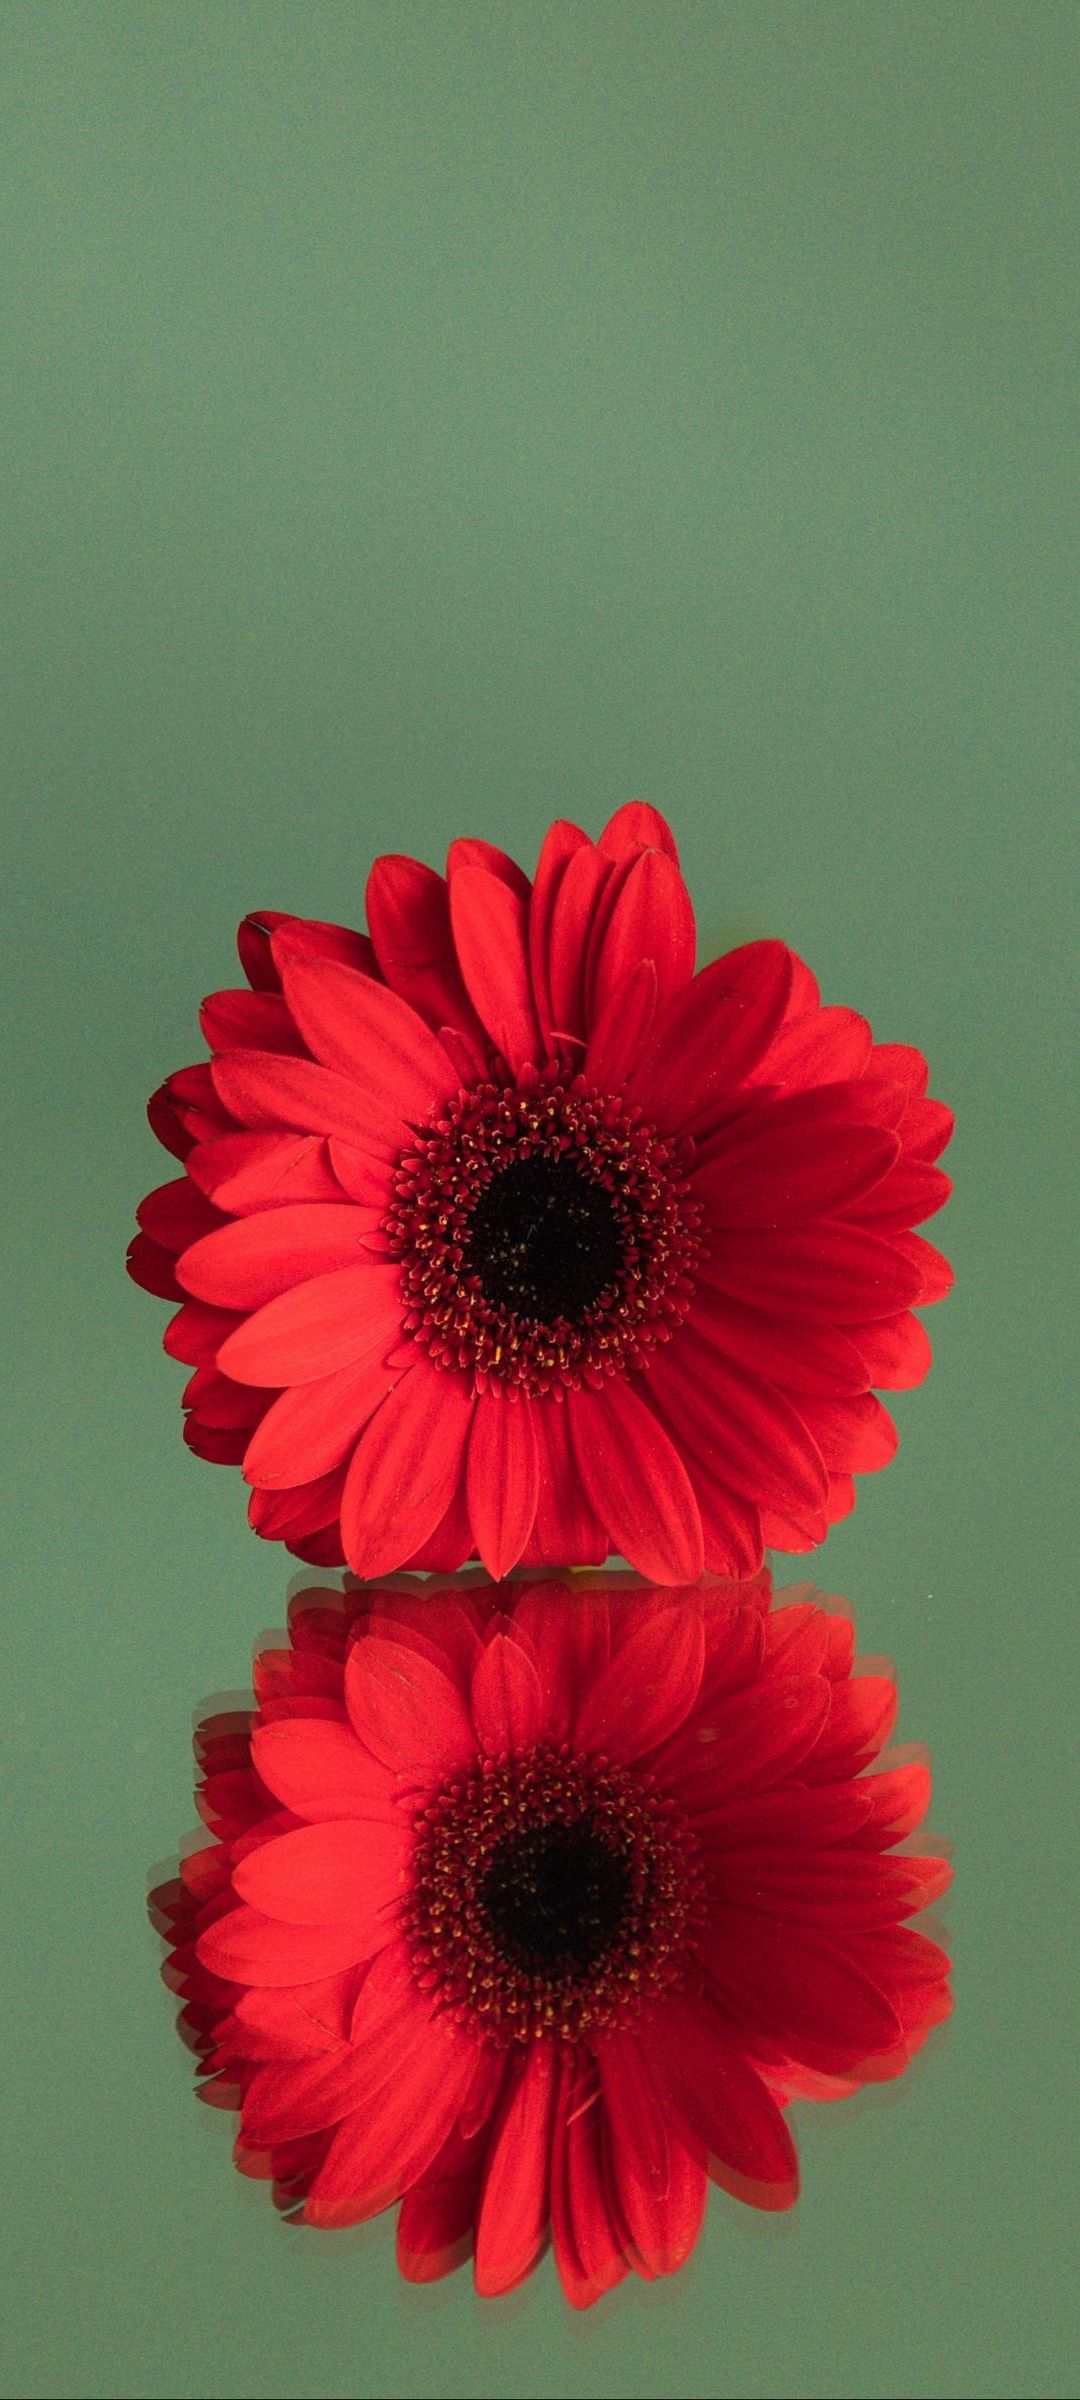 鏡面する赤い花 Redmi Note 10 Pro Androidスマホ壁紙 待ち受け スマラン